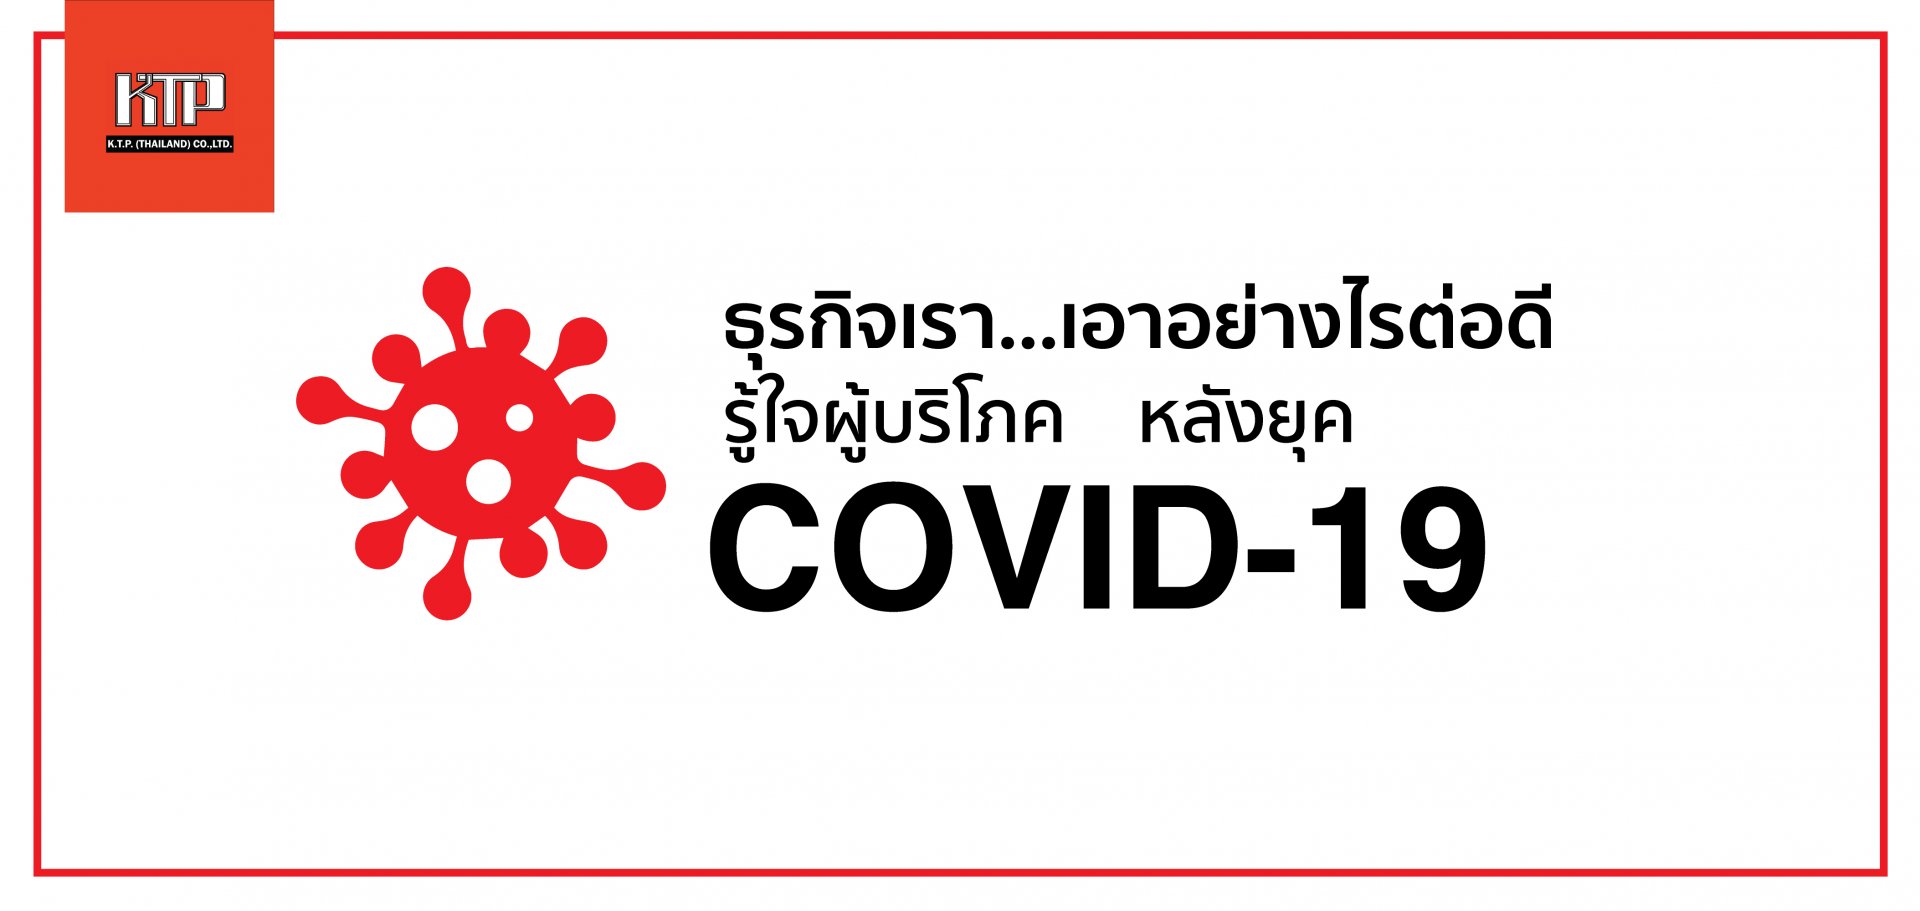 ธุรกิจเรา…เอาอย่างไรต่อดี  รู้ใจผู้บริโภคหลังยุค COVID-19